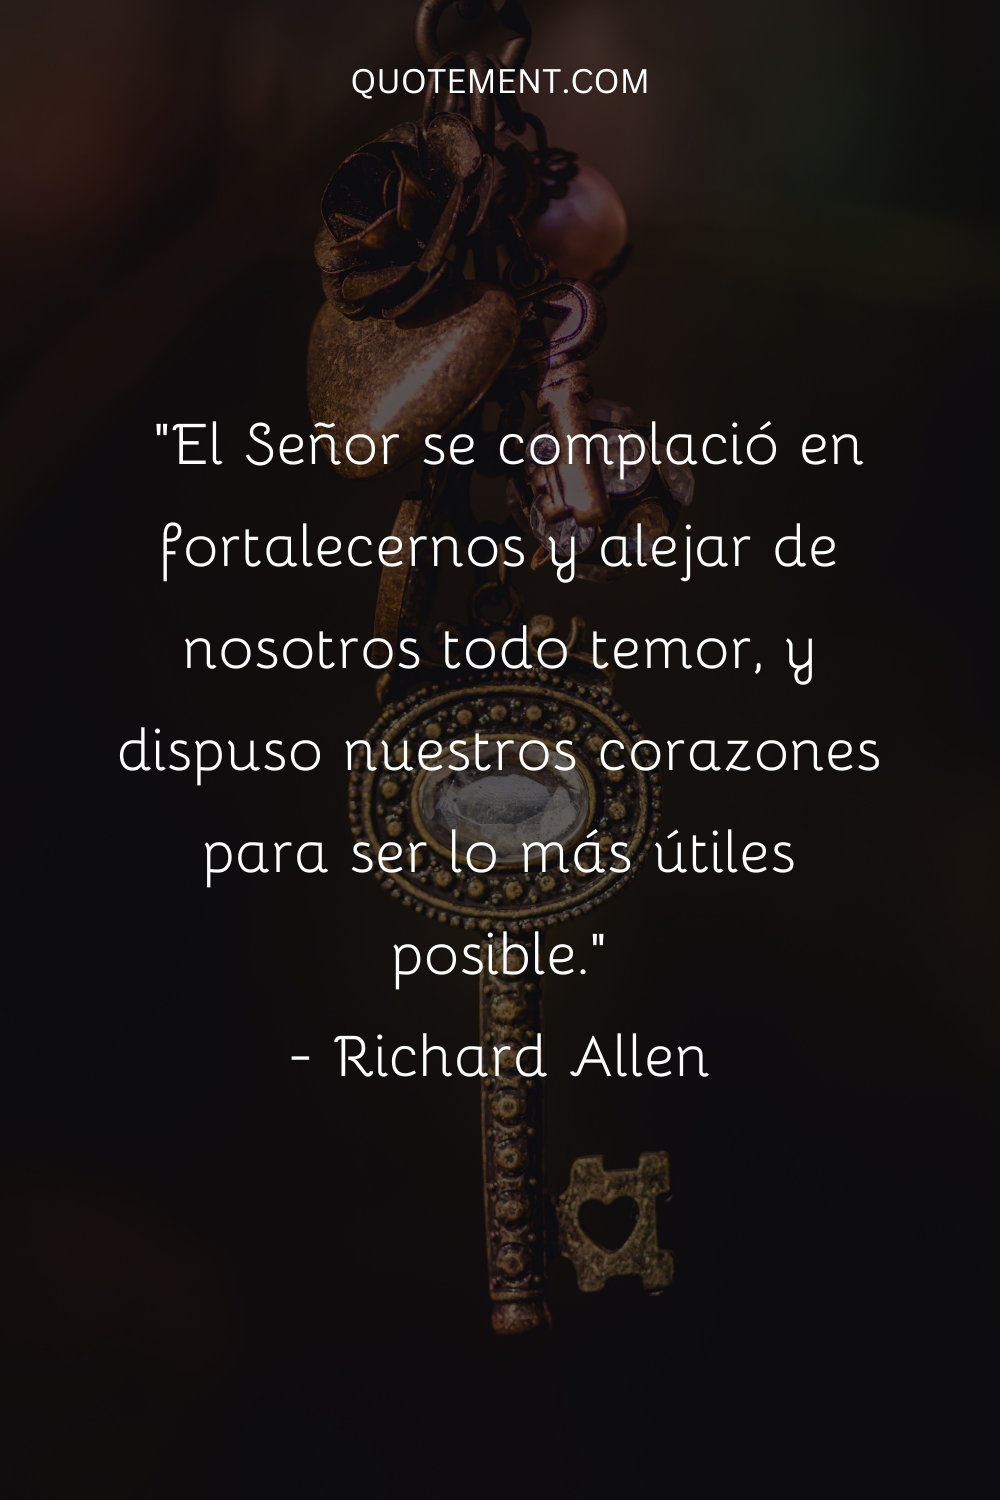 "El Señor se complació en fortalecernos y alejar de nosotros todo temor, y dispuso nuestros corazones para ser lo más útiles posible". - Richard Allen